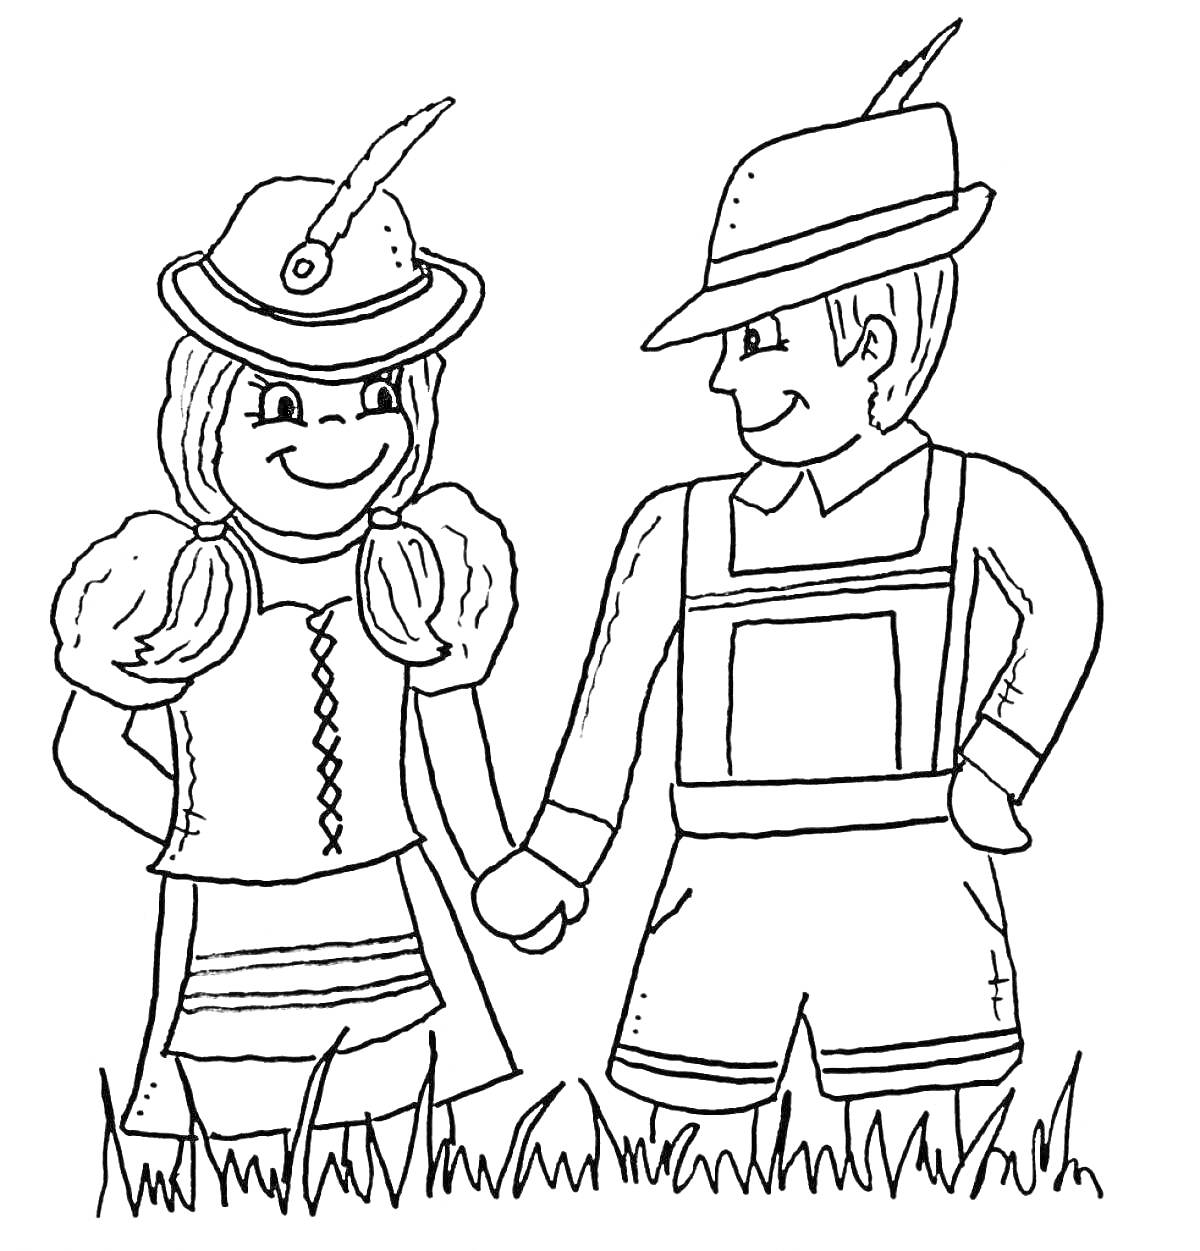 Дети в национальных немецких костюмах (девочка и мальчик в традиционной одежде, стоящие на траве)